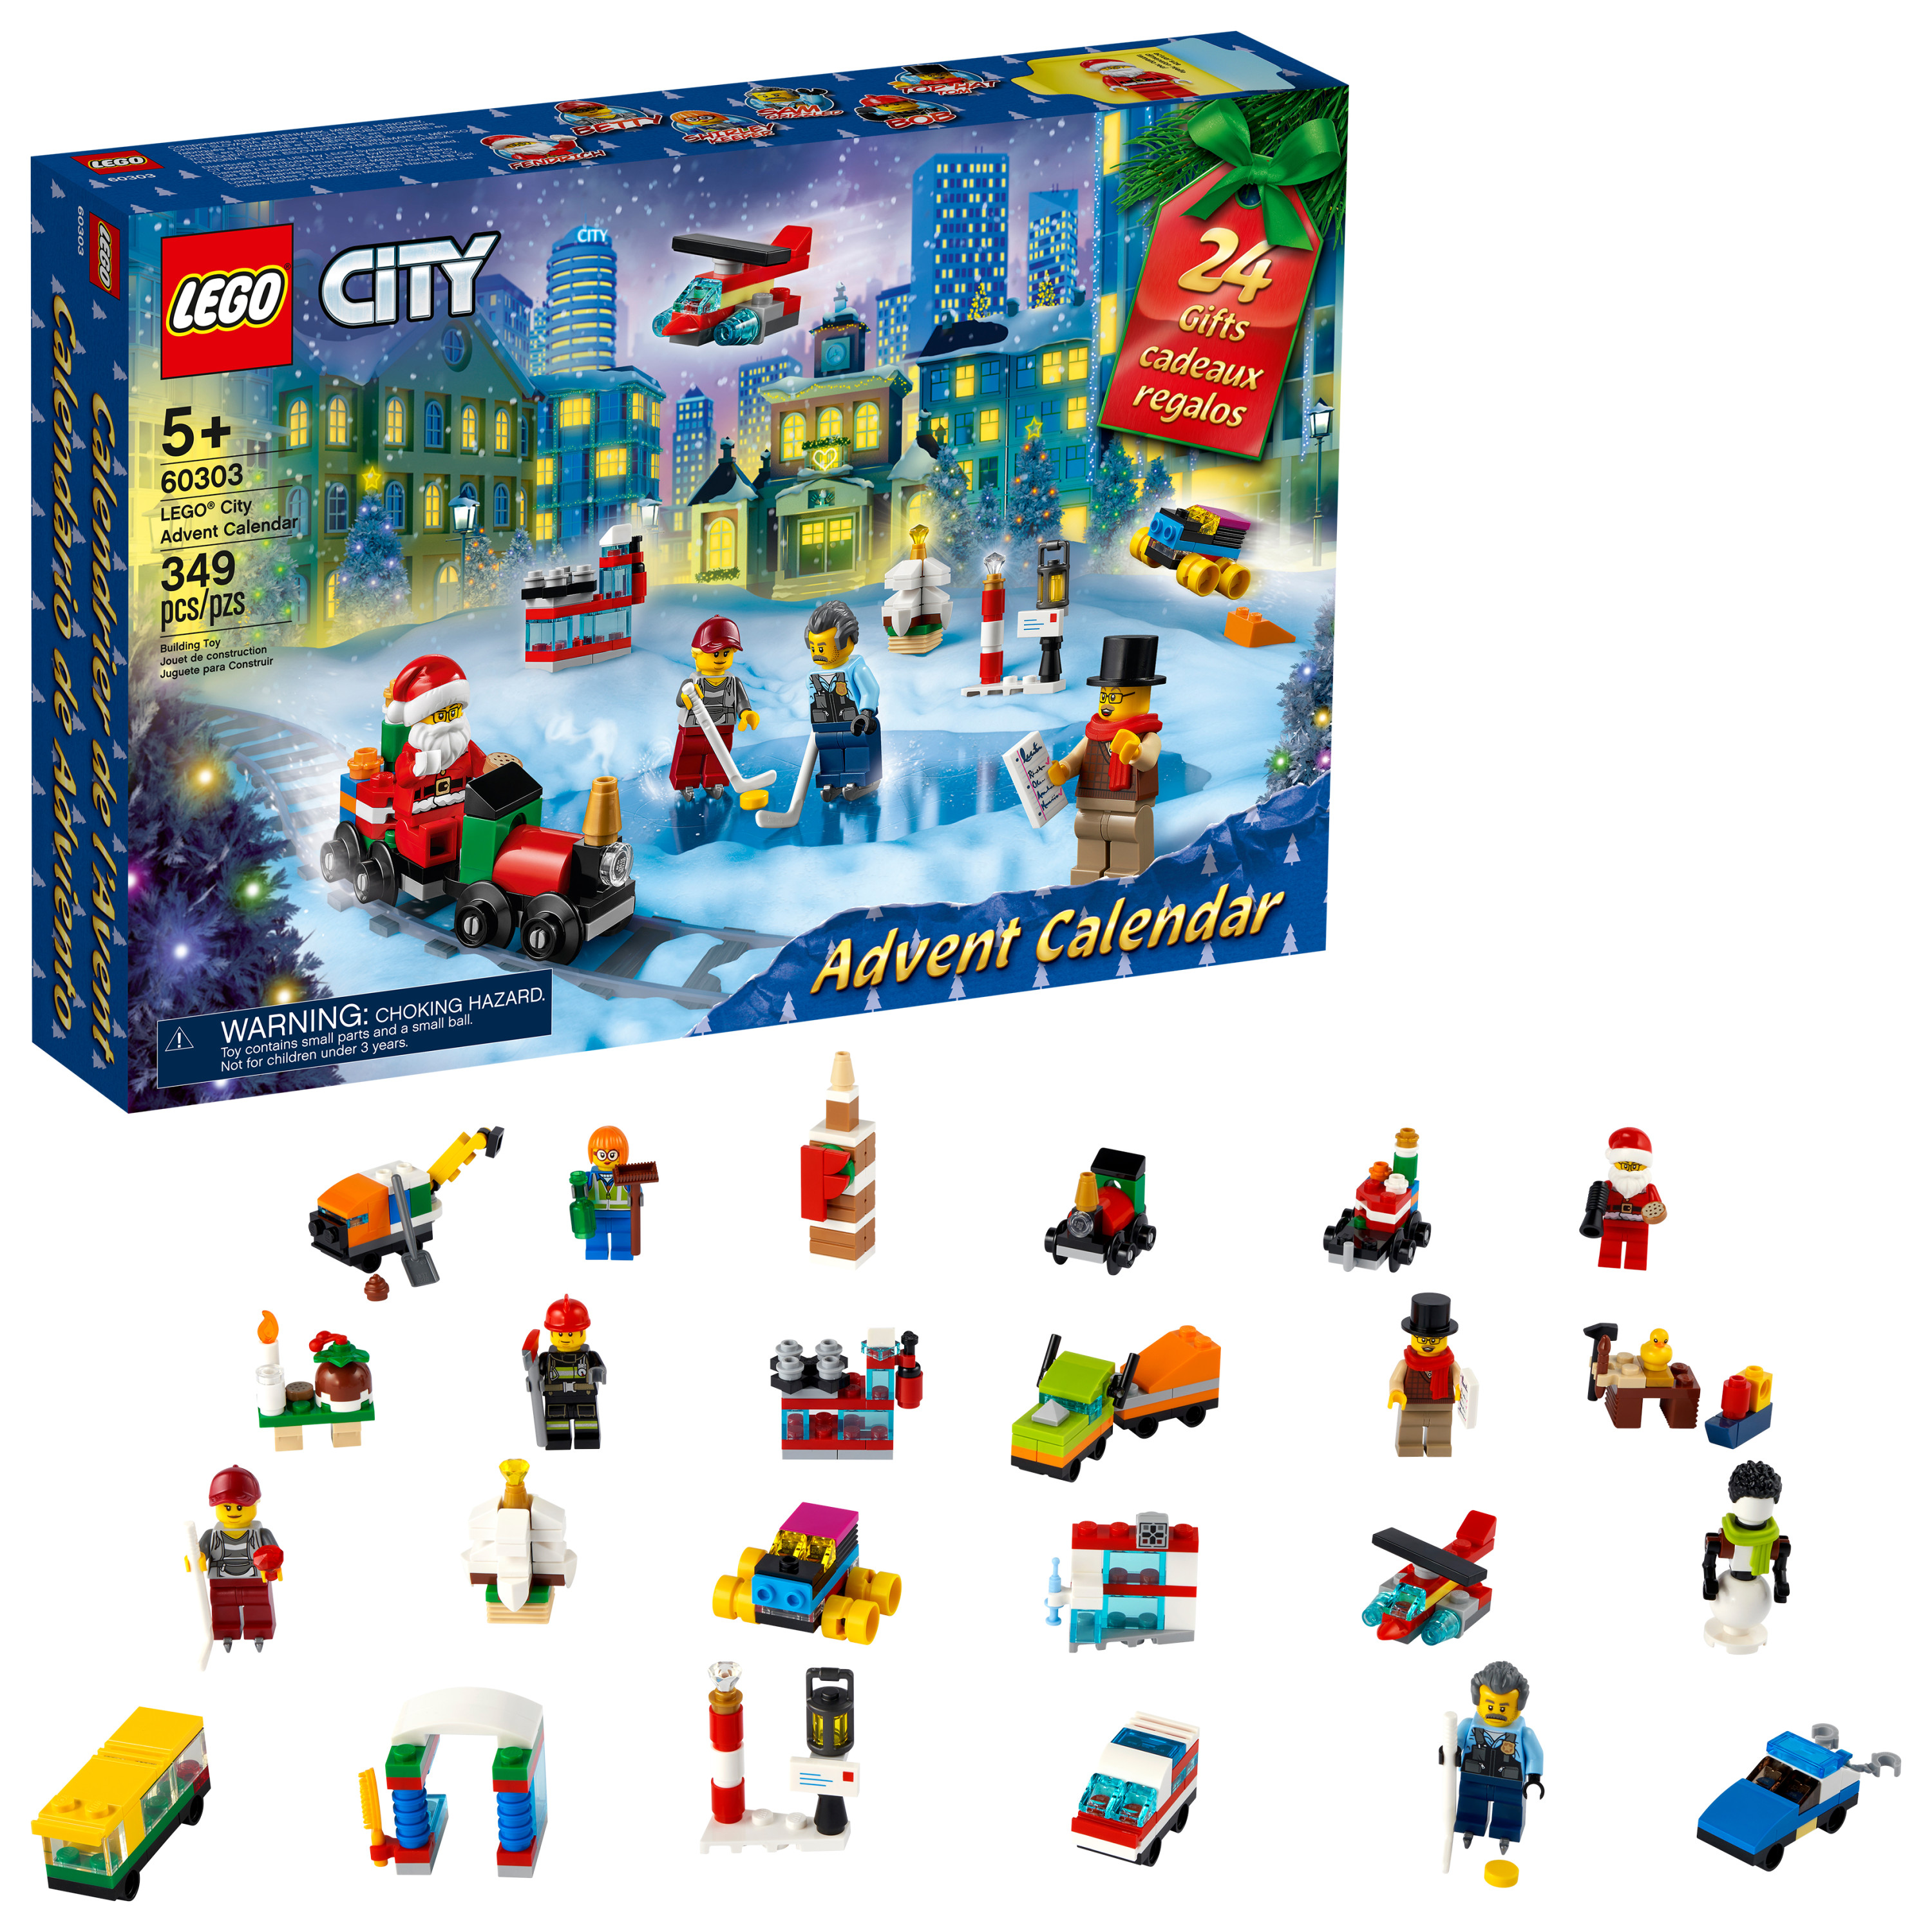 LEGO City Advent Calendar 60303 Building Toy (349 Pieces) - Walmart.com $24